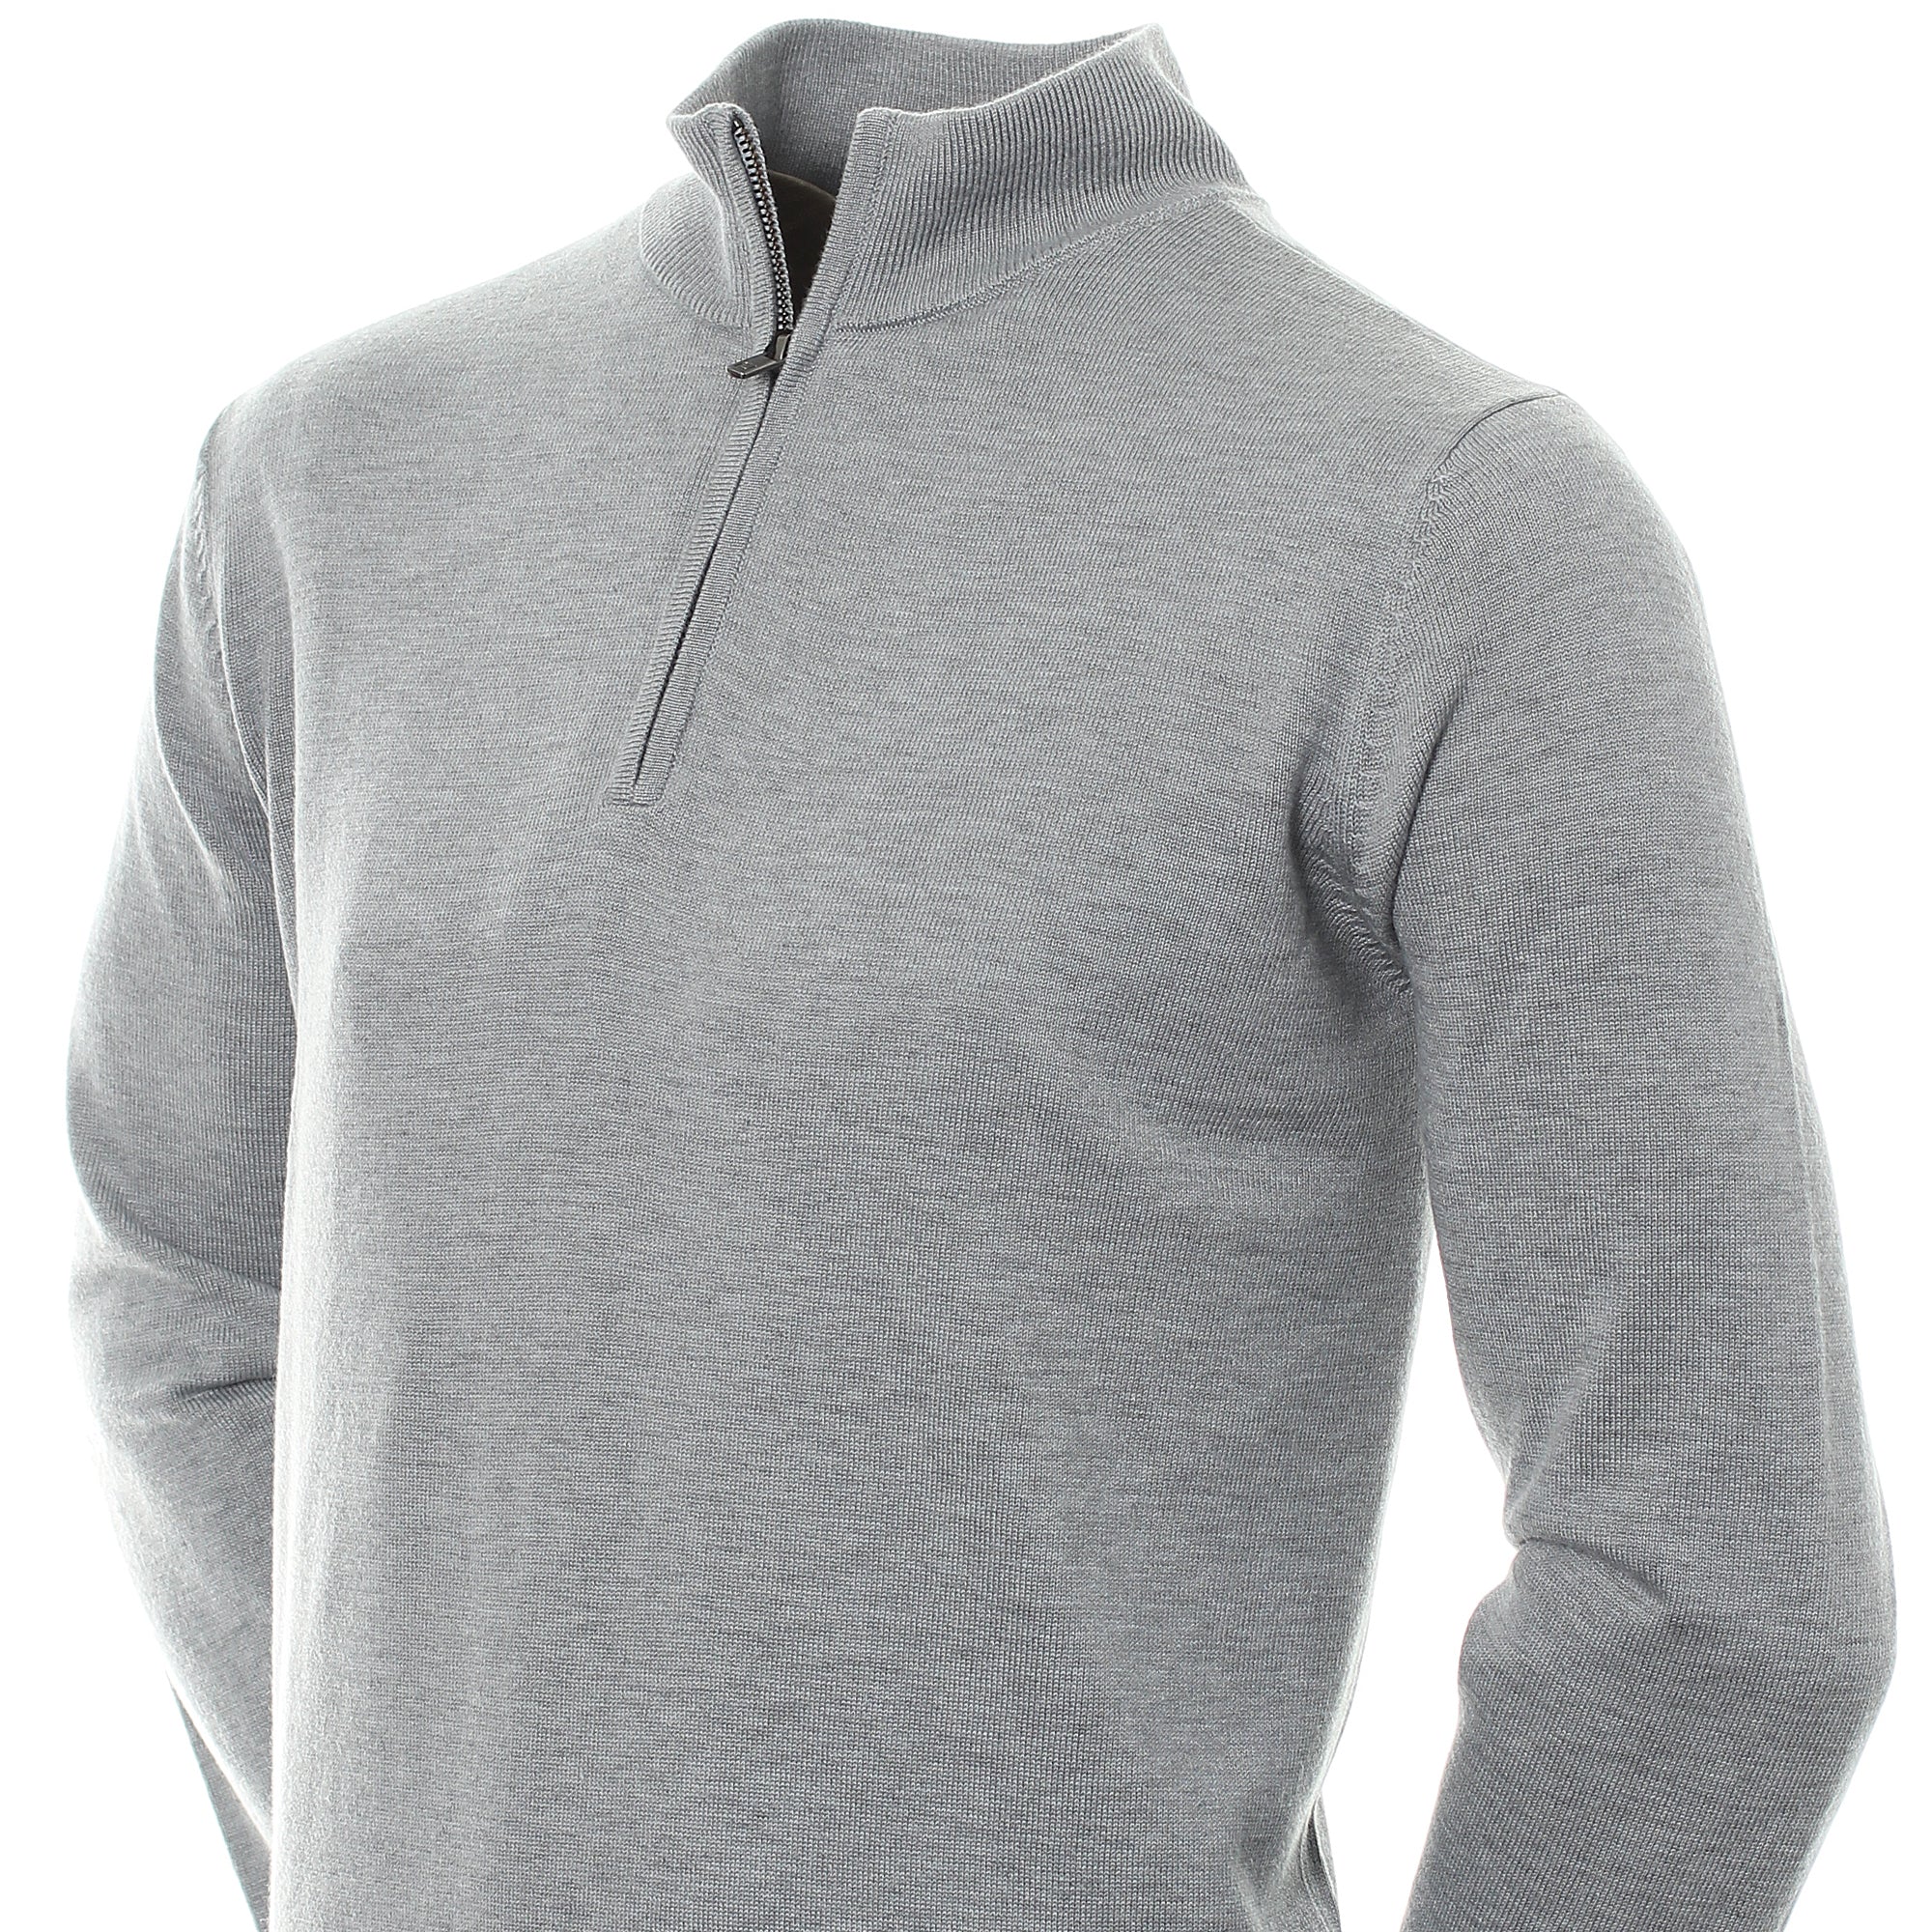 footjoy-wool-blend-lined-1-2-zip-sweater-90211-grey